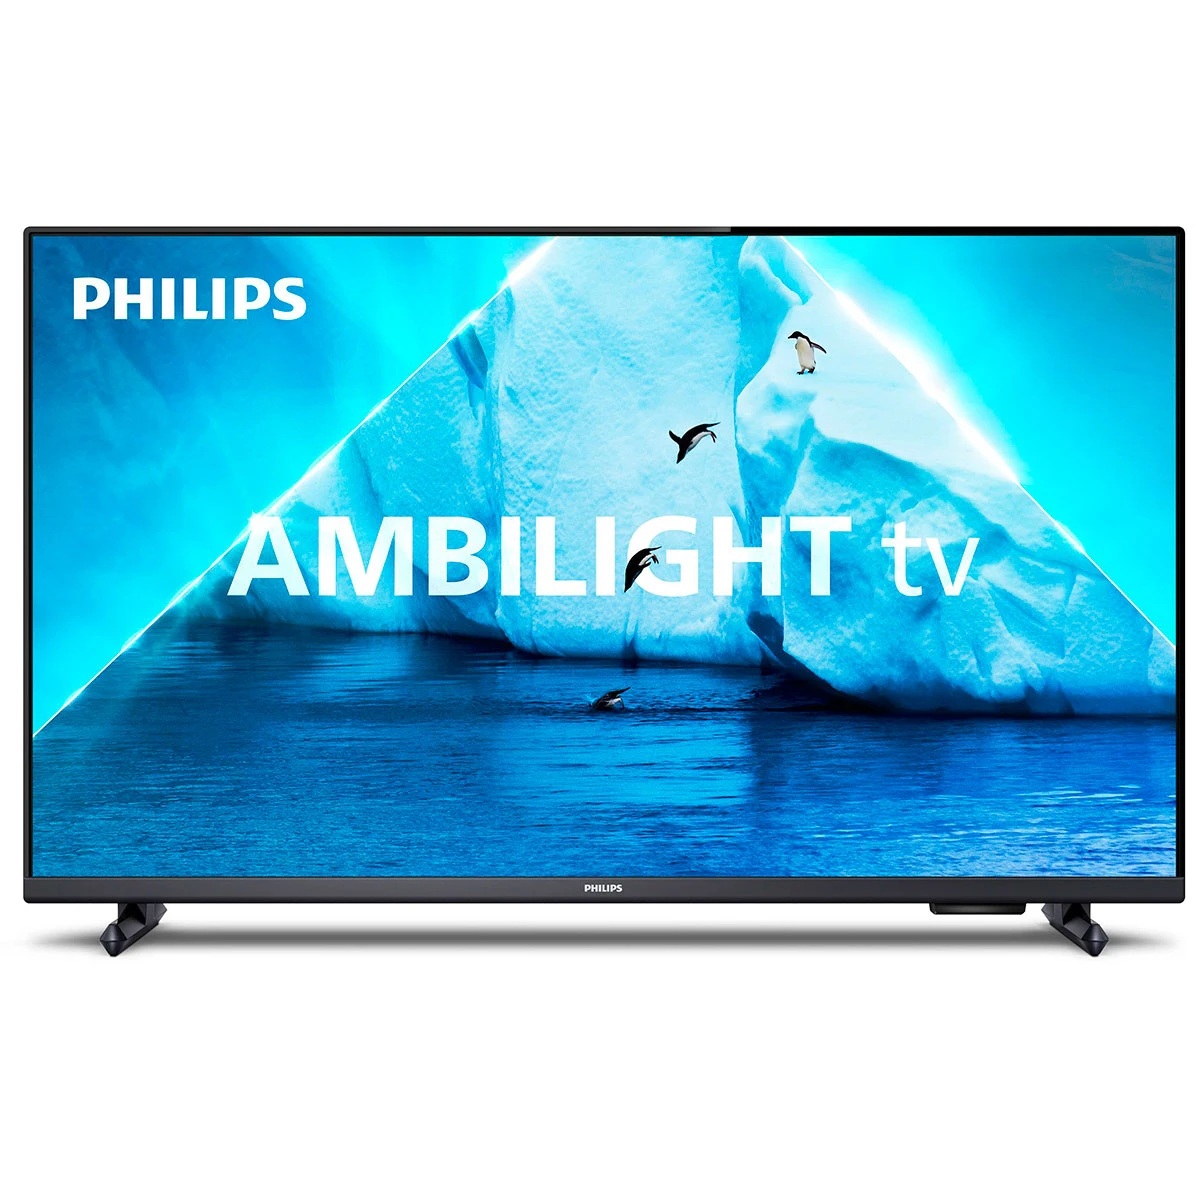 Philips 32PFS6908/12 Smart TV 32" Full HD DVB-T2